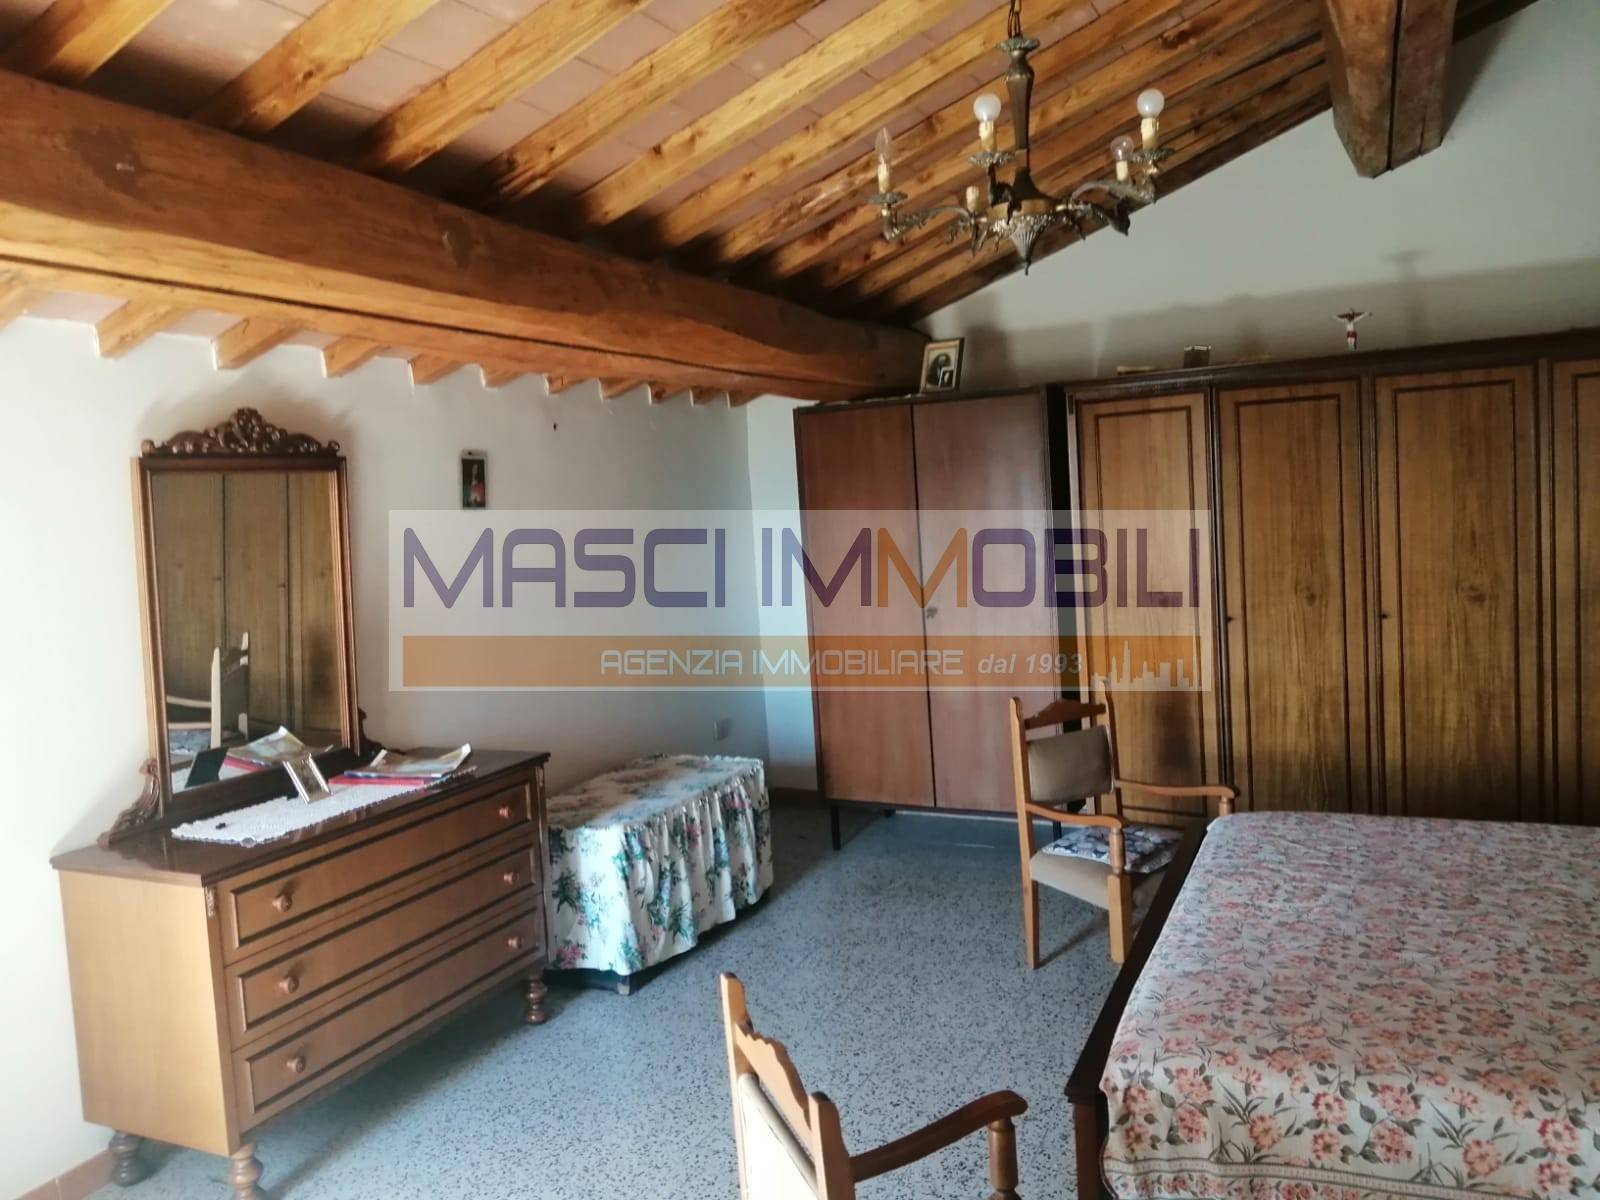 Appartamento in vendita a Civitella San Paolo, 2 locali, prezzo € 20.000 | CambioCasa.it